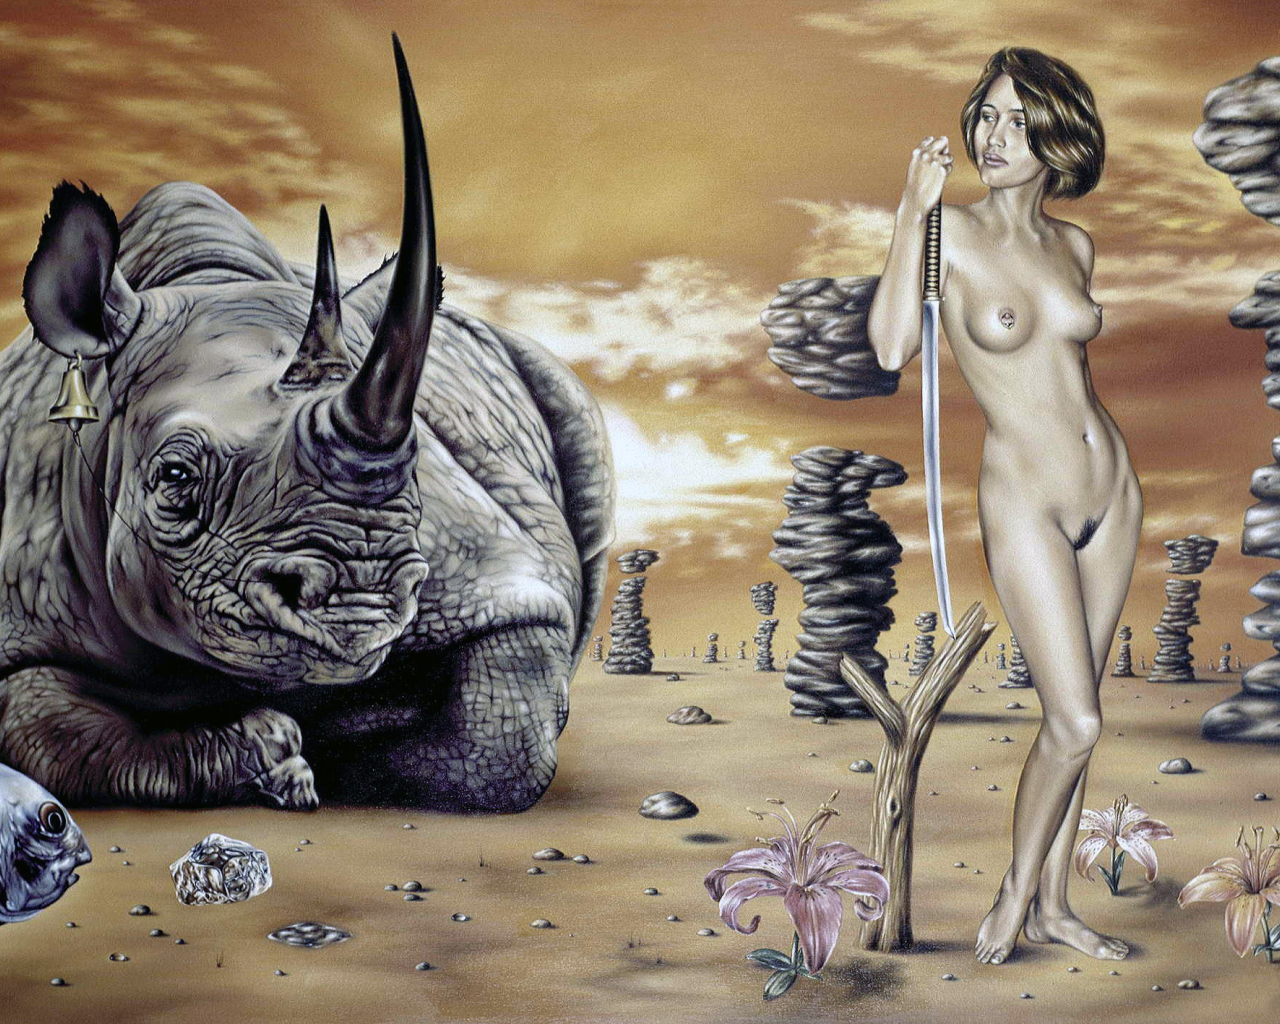 Картина, сюрреализм, девушка, носорог, рыба, камни, меч.